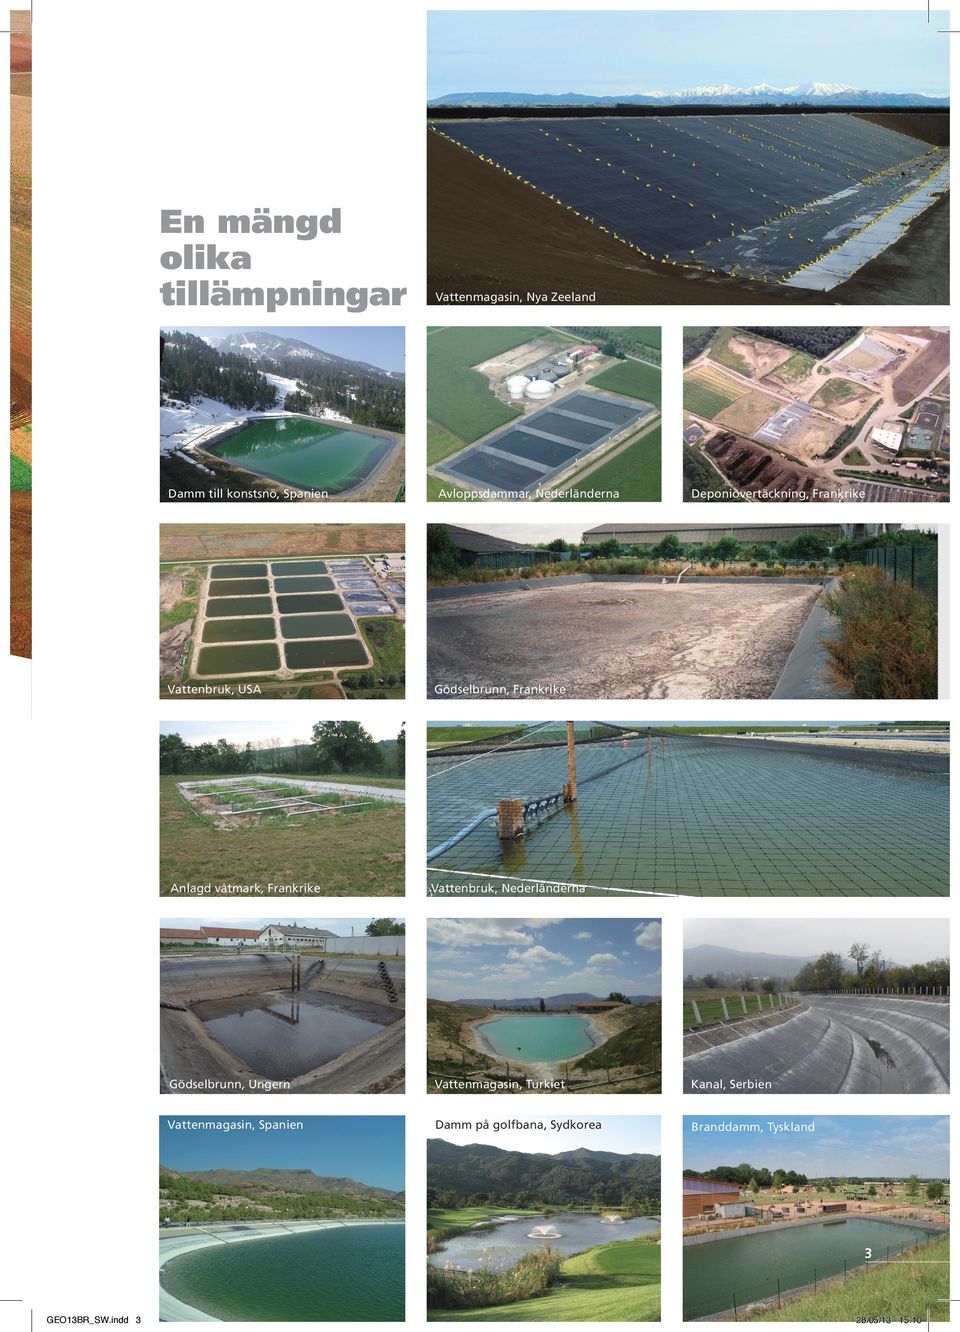 Vattenbruk, Nederländerna Deponiövertäckning, Frankrike Gödselbrunn, Ungern Vattenmagasin,